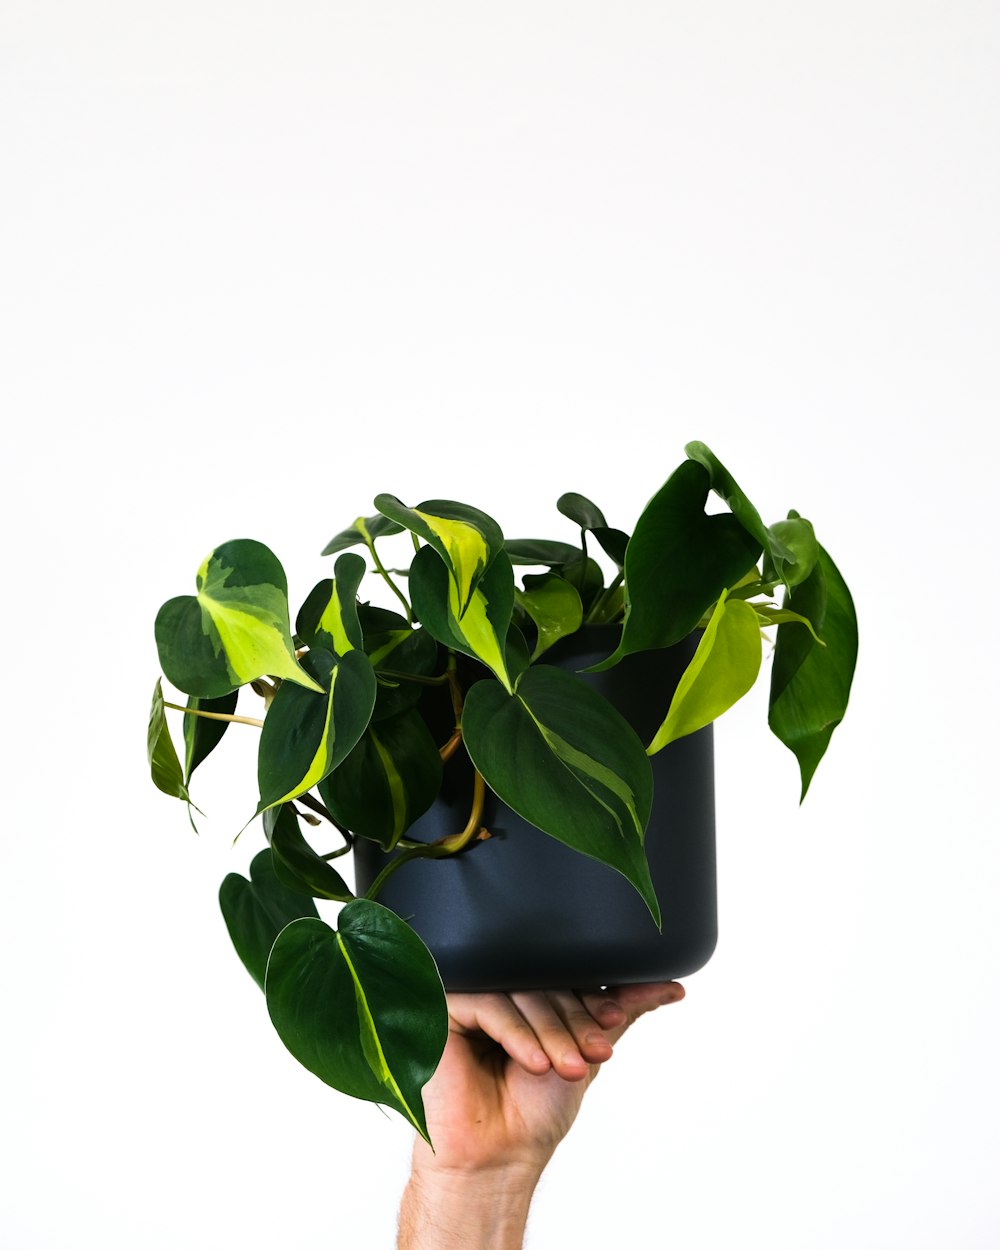 una mano sosteniendo una planta en maceta con hojas verdes